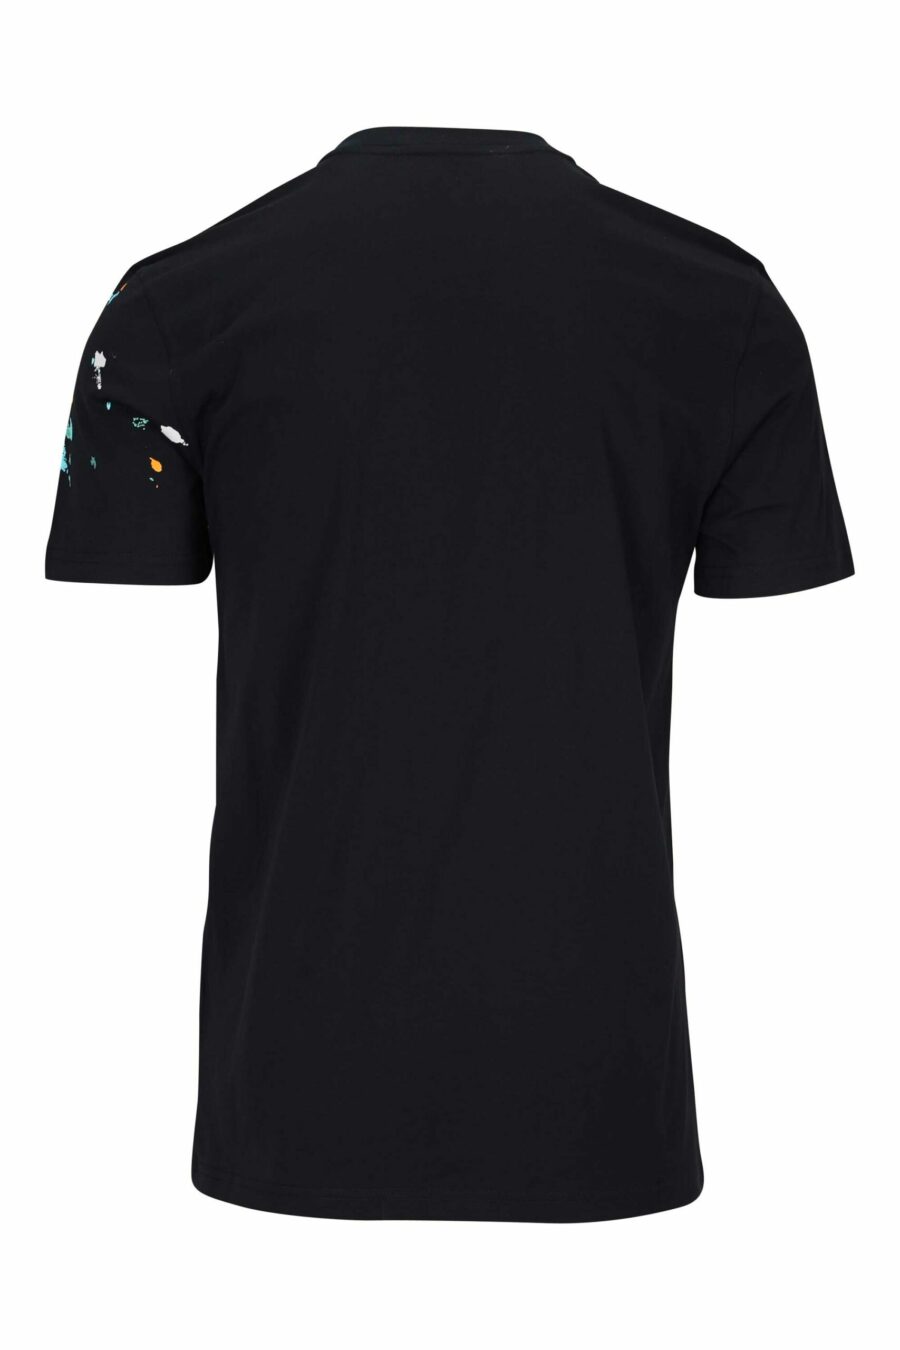 Schwarzes T-Shirt mit Maxilogo "couture milano" mit mehrfarbigem "splash" - 667113391946 1 skaliert